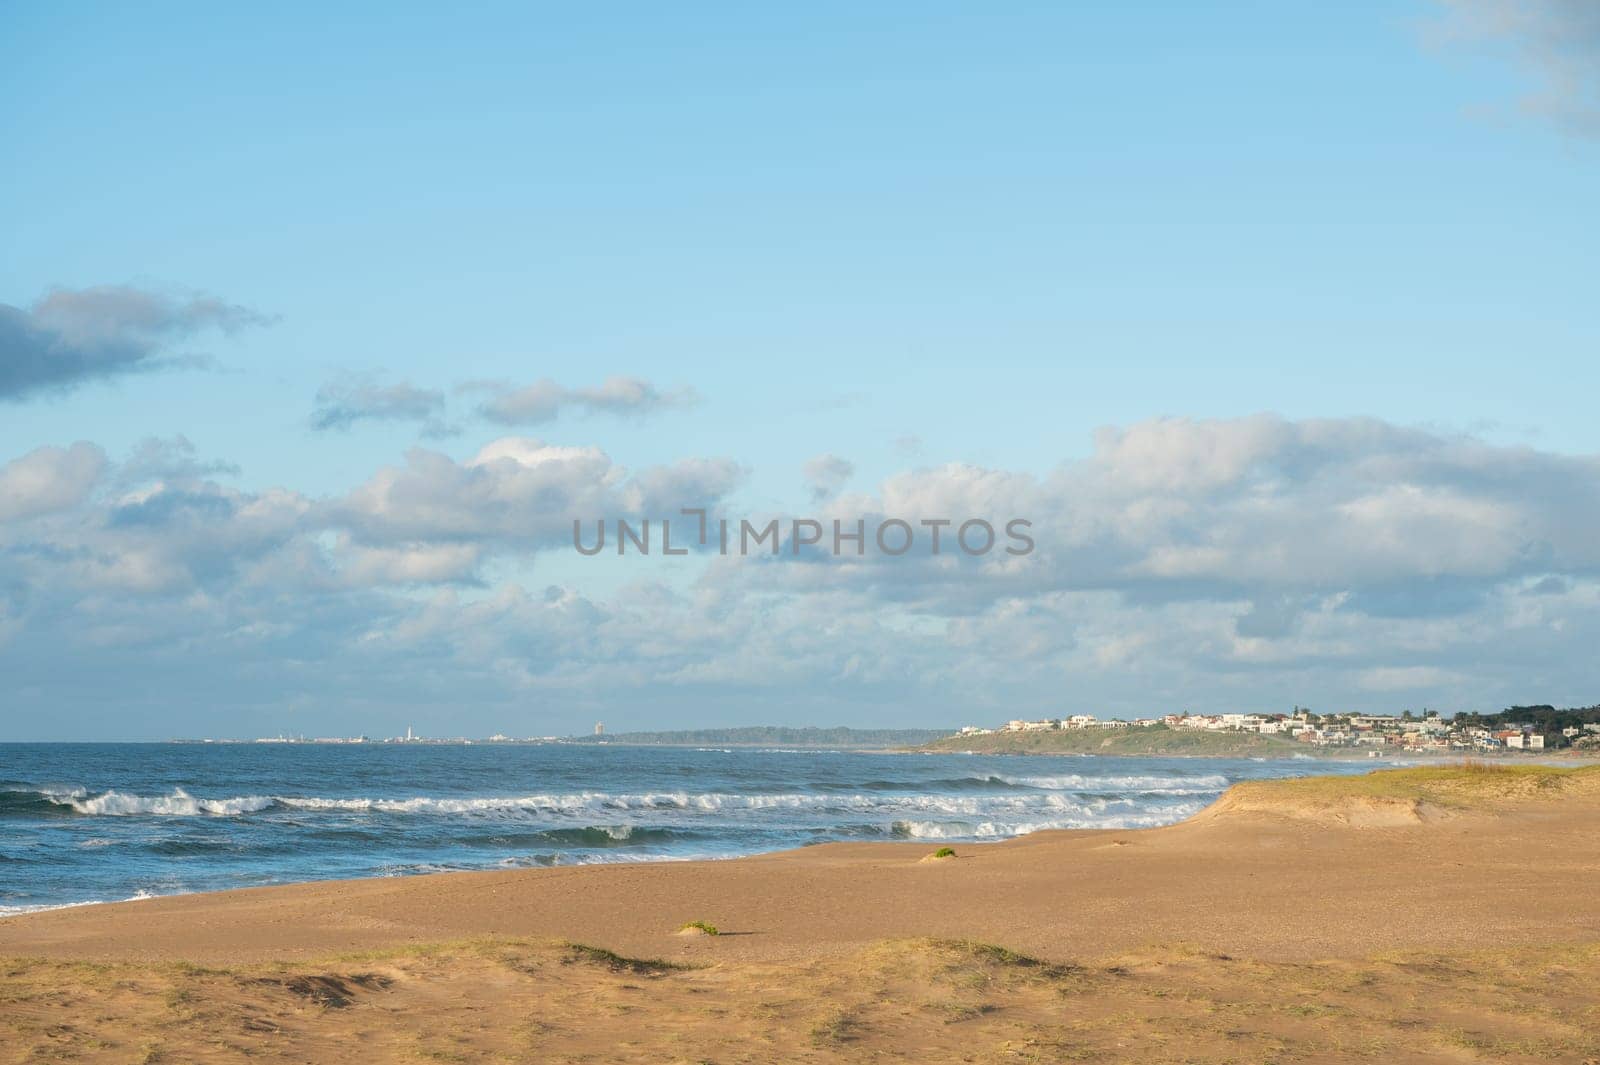 Santa Isabel de La Pedrera beach in the Department of Rocha in Uruguay.